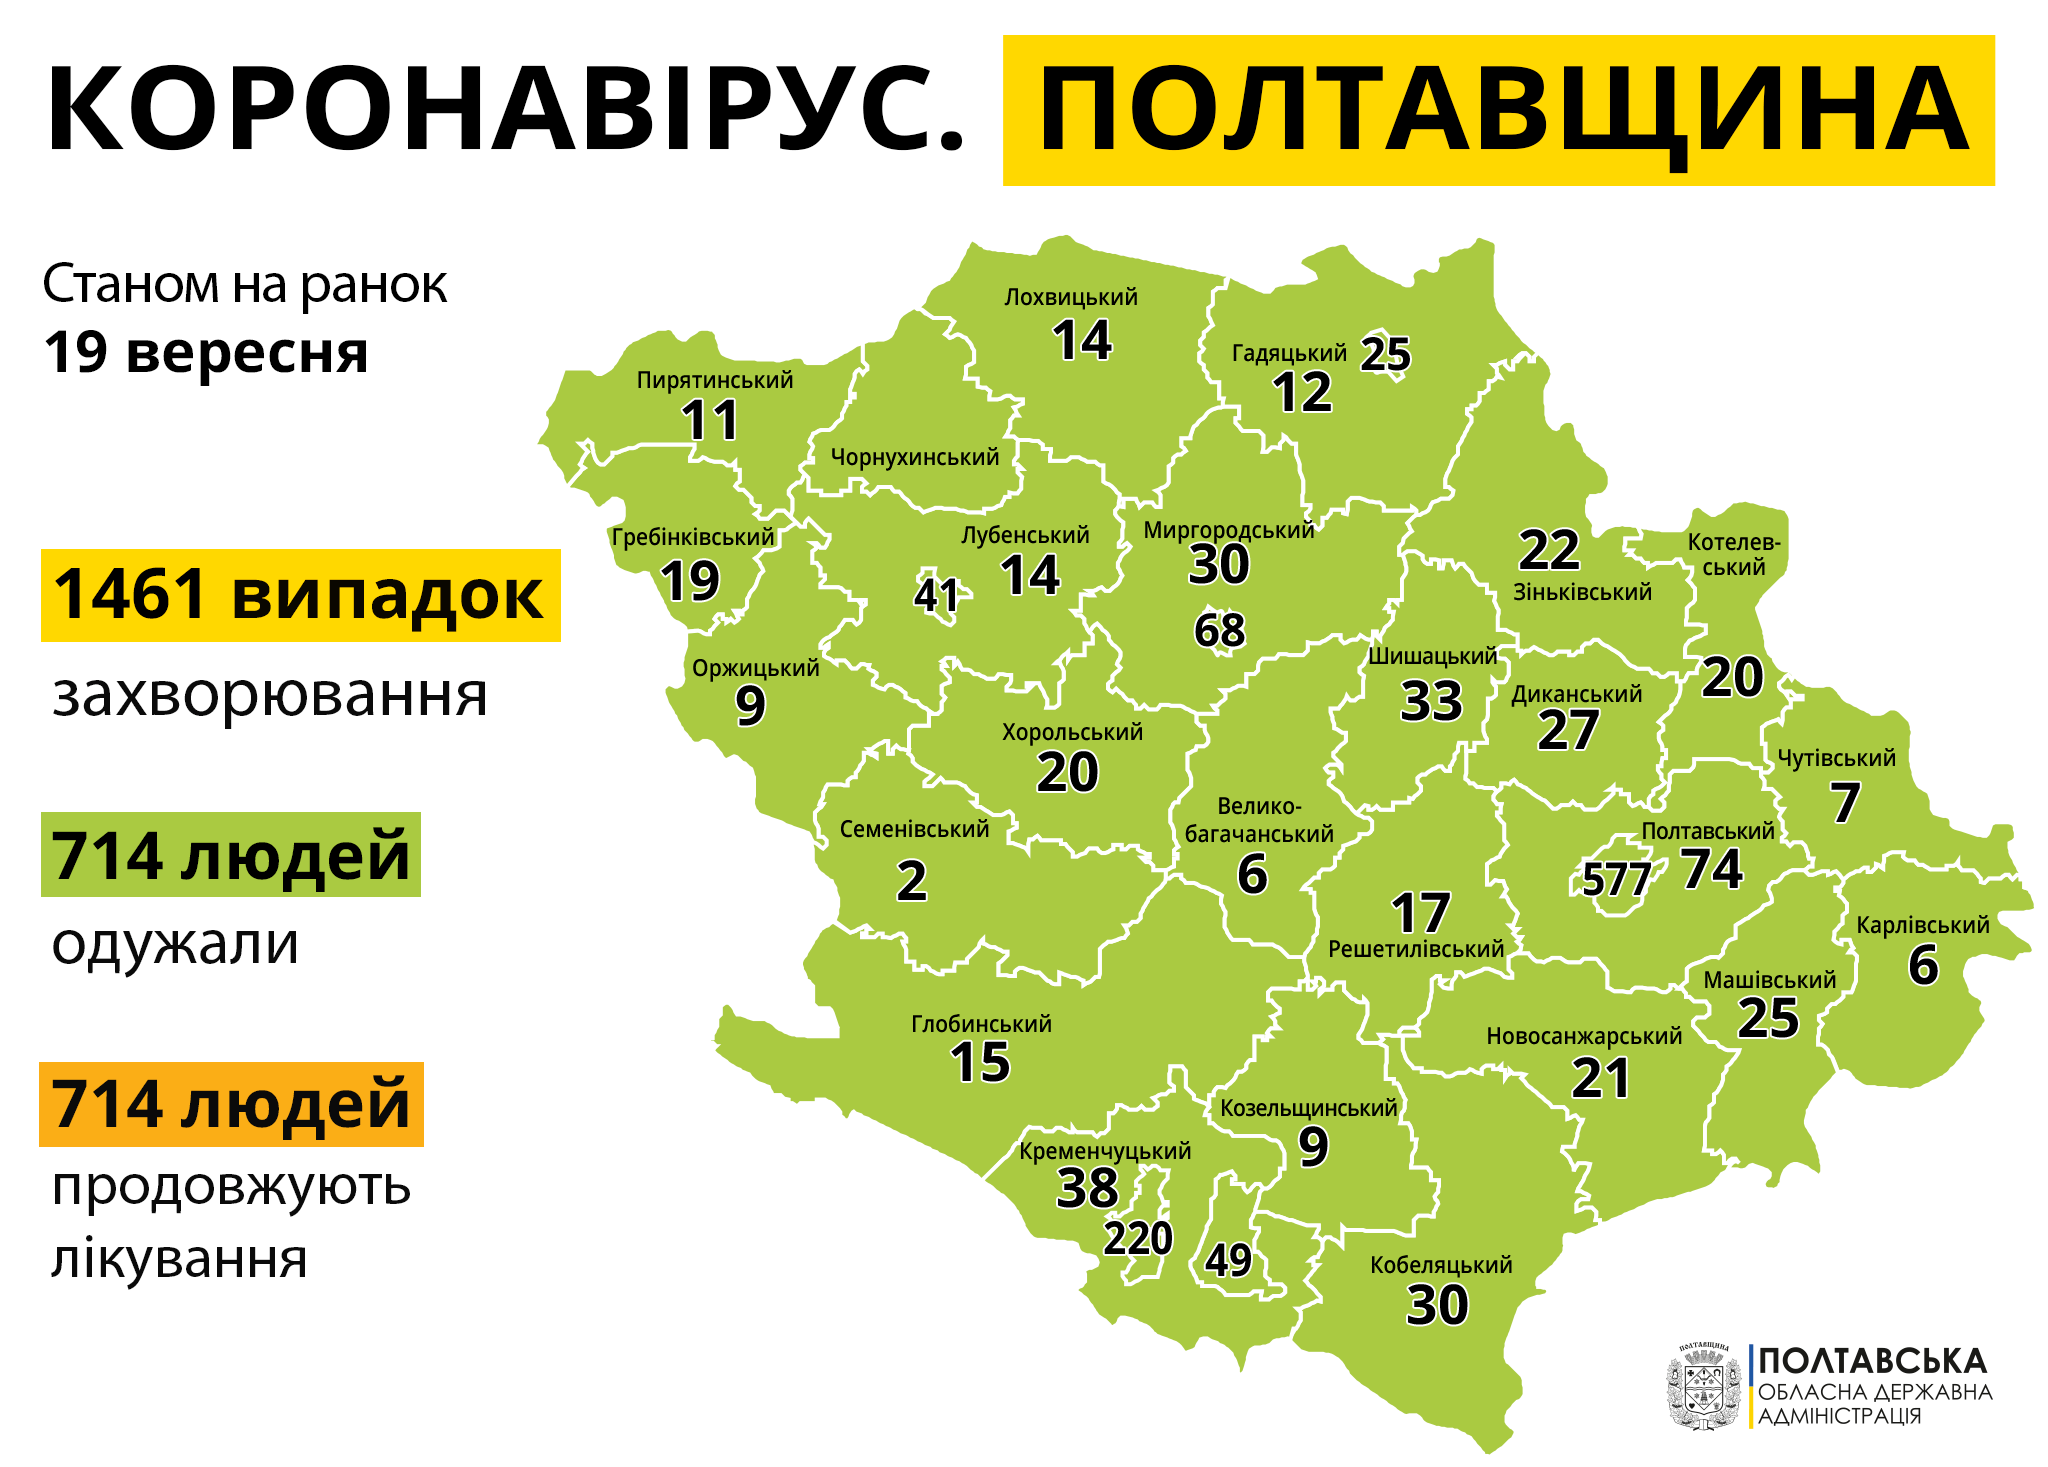 На Полтавщині за добу на СOVID-19 захворіло 72 людини